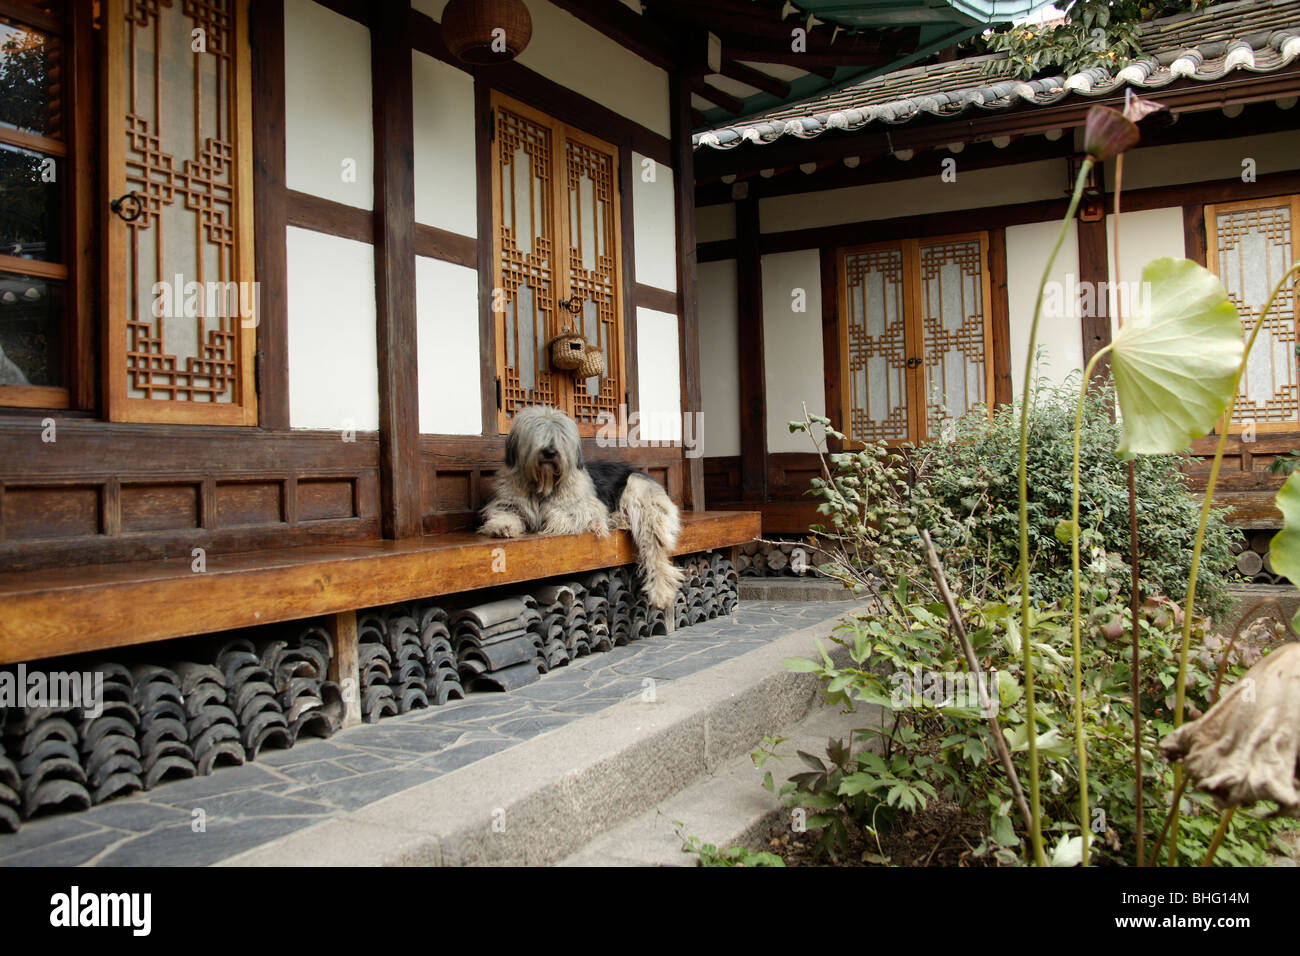 Seoul Guesthouse dans une maison à Séoul Hanok traditionnel , Corée du Sud, Asie Banque D'Images